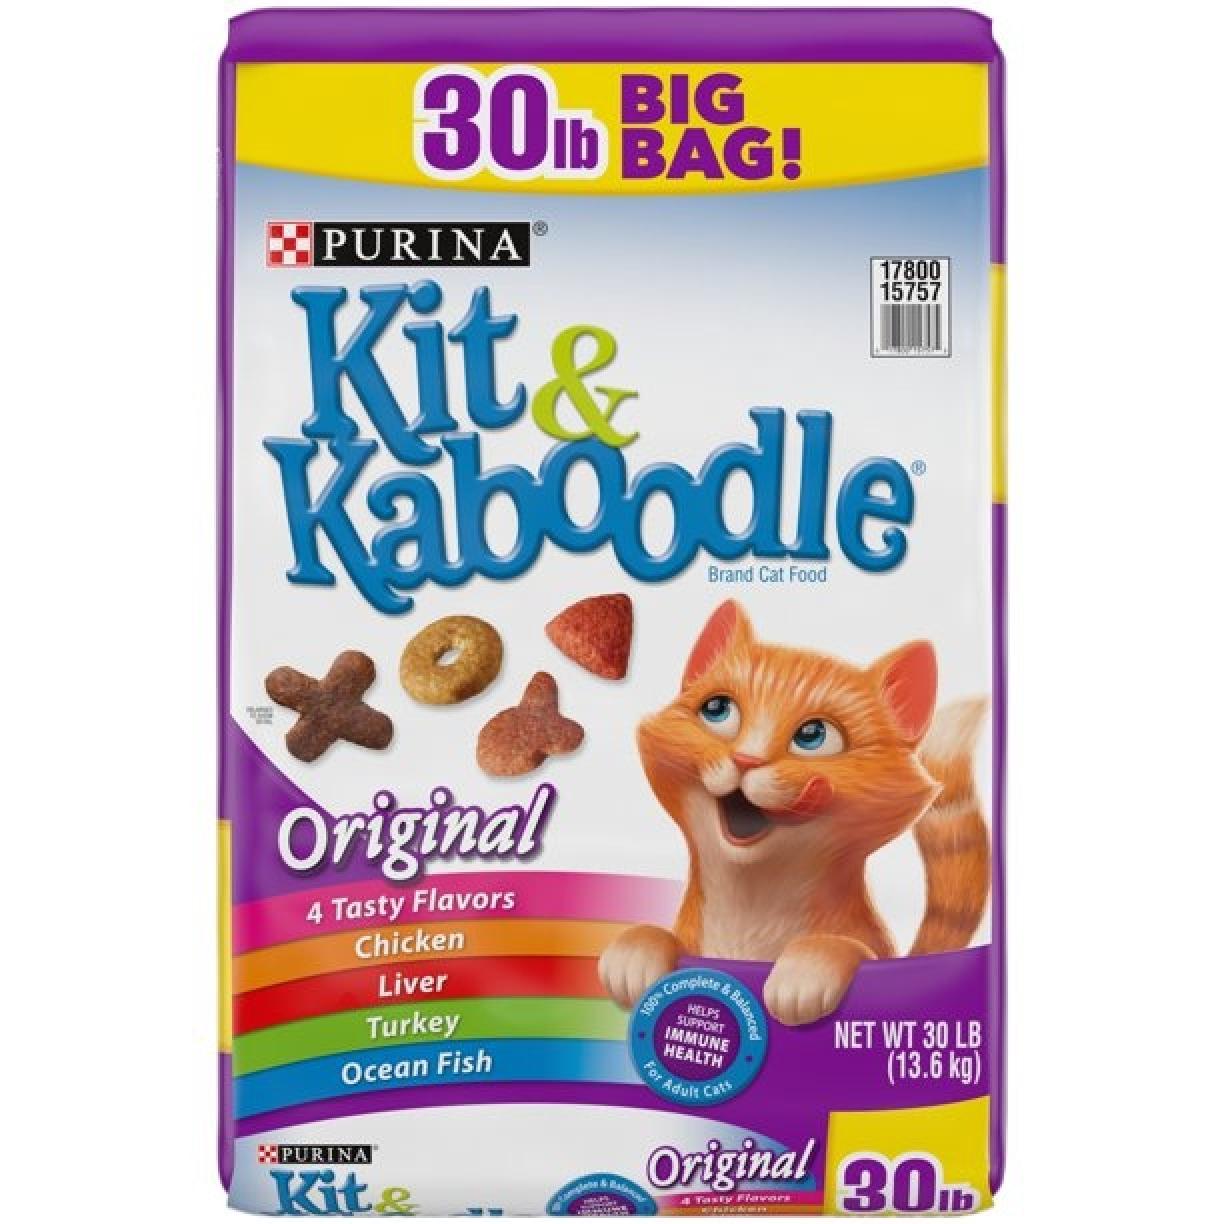 Purina Kit & Kaboodle Original Cat Food